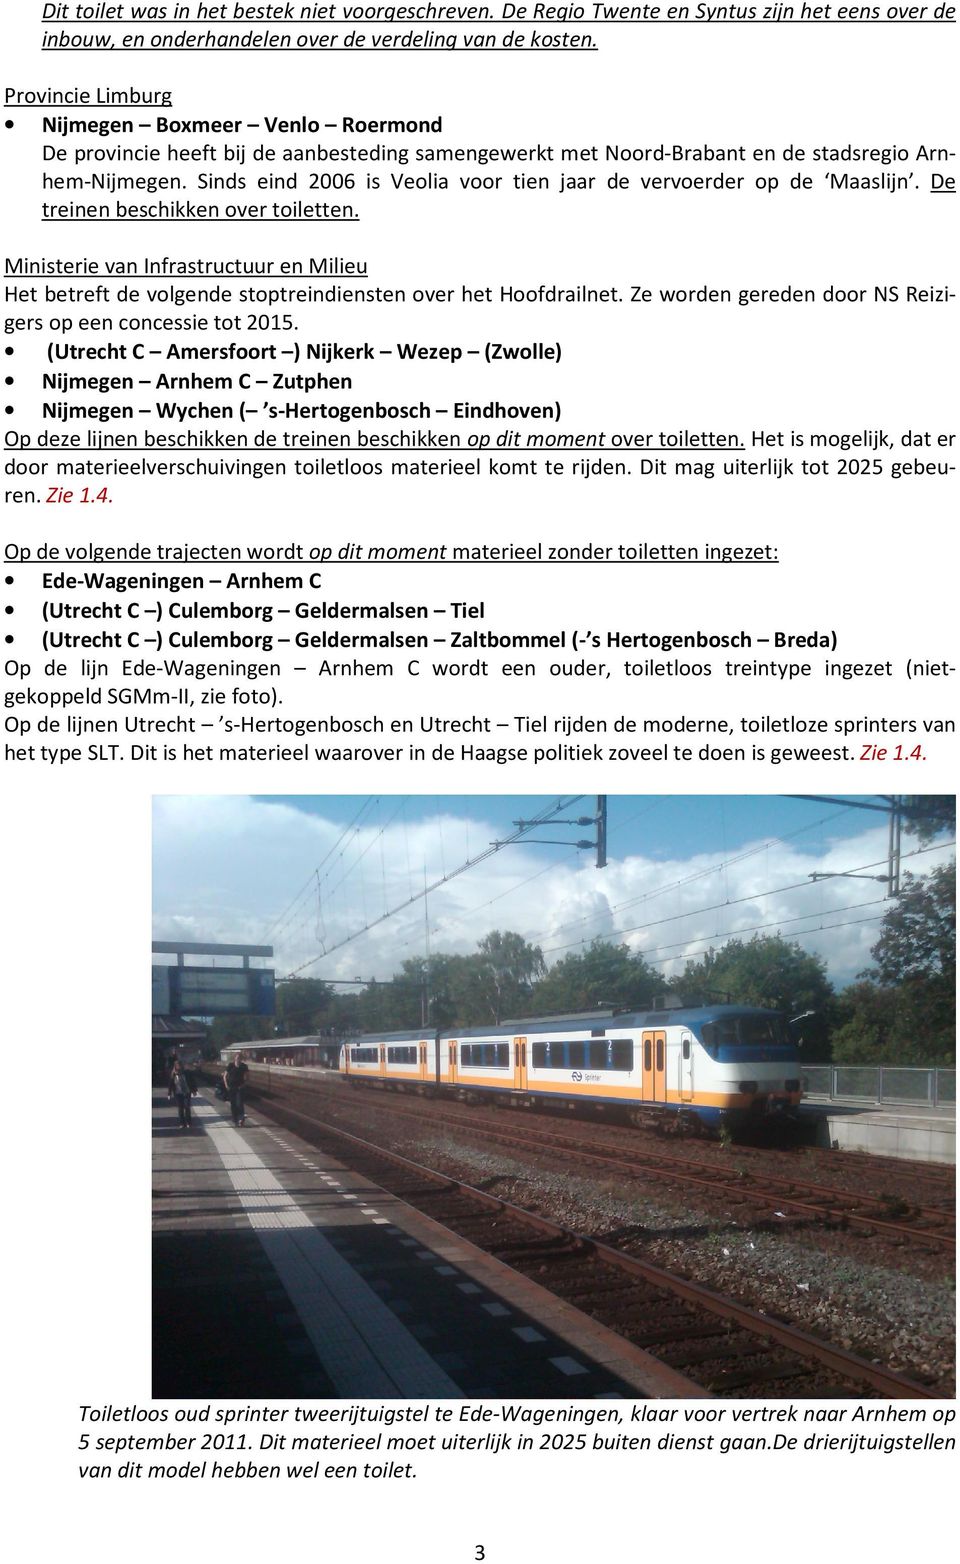 Sinds eind 2006 is Veolia voor tien jaar de vervoerder op de Maaslijn. De treinen beschikken over toiletten.